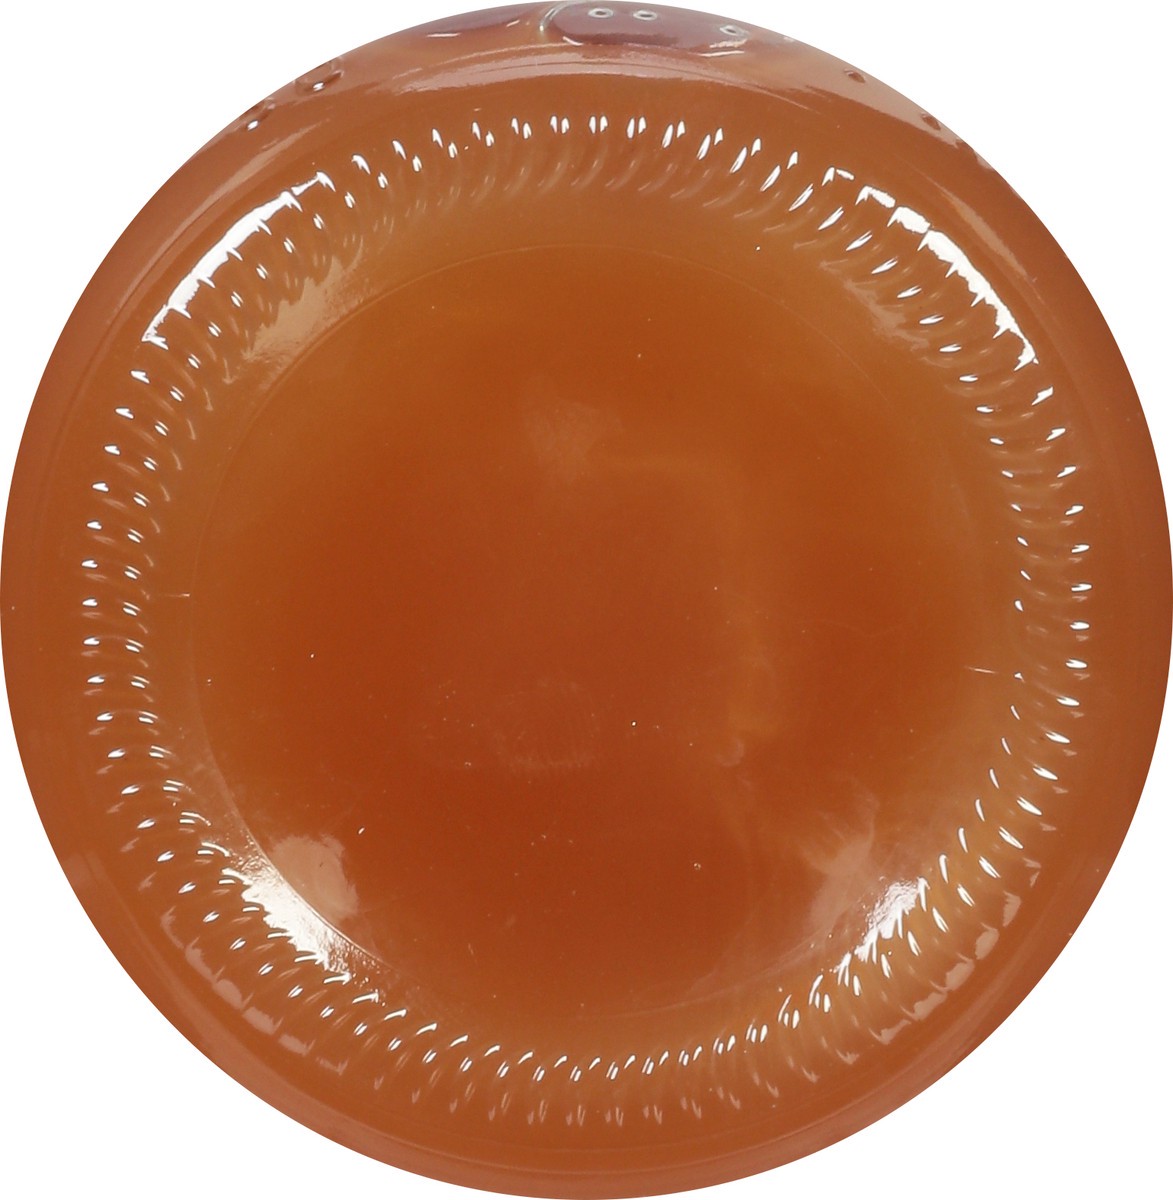 slide 4 of 9, Cadia Unfiltered Apple Cider Vinegar 16 fl oz, 16 fl oz